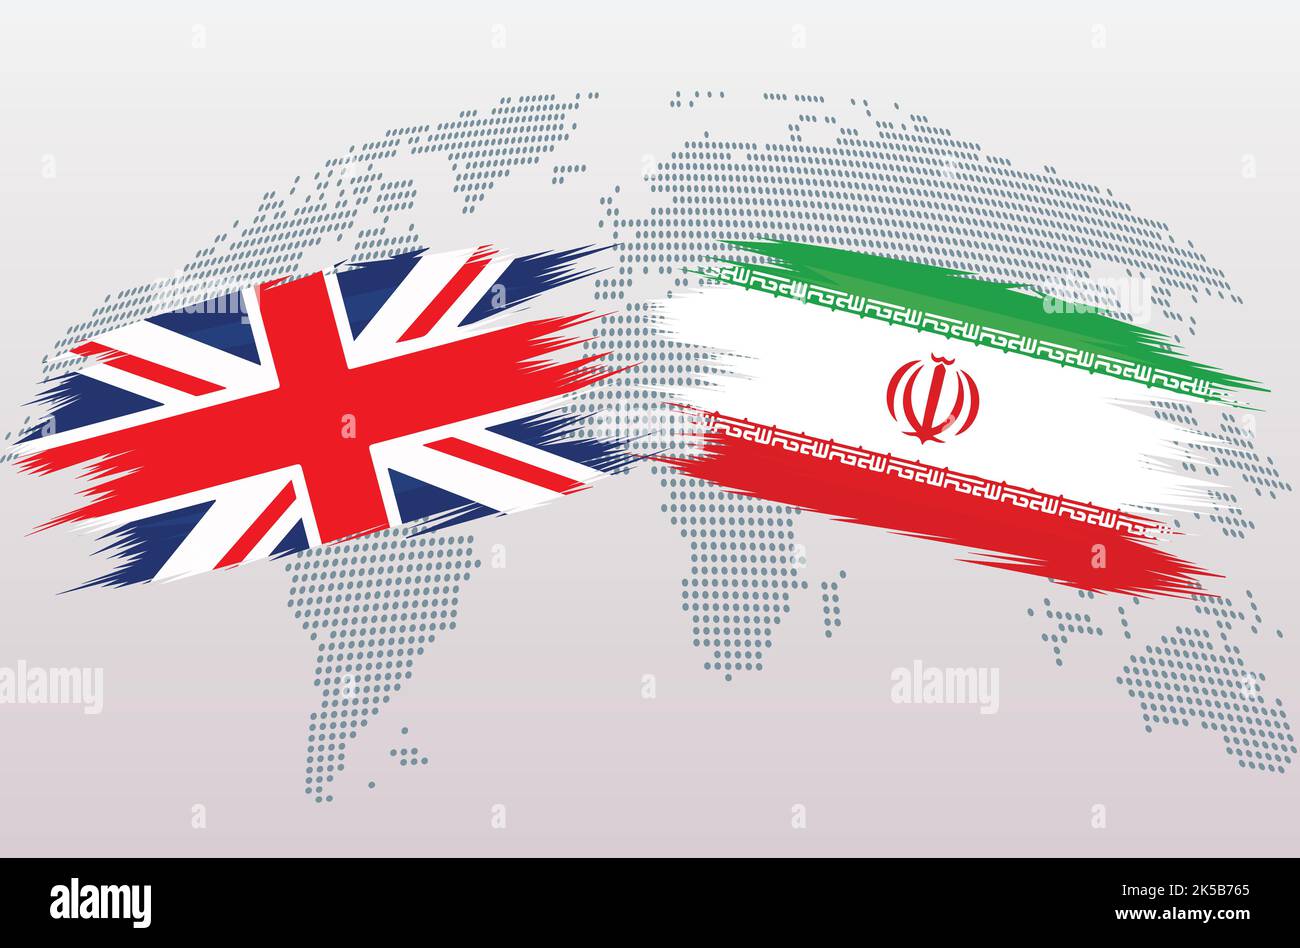 Britische Flaggen Großbritannien und Iran. Das Vereinigte Königreich gegen Iran Flaggen, isoliert auf grauem Hintergrund der Weltkarte. Vektorgrafik. Stock Vektor